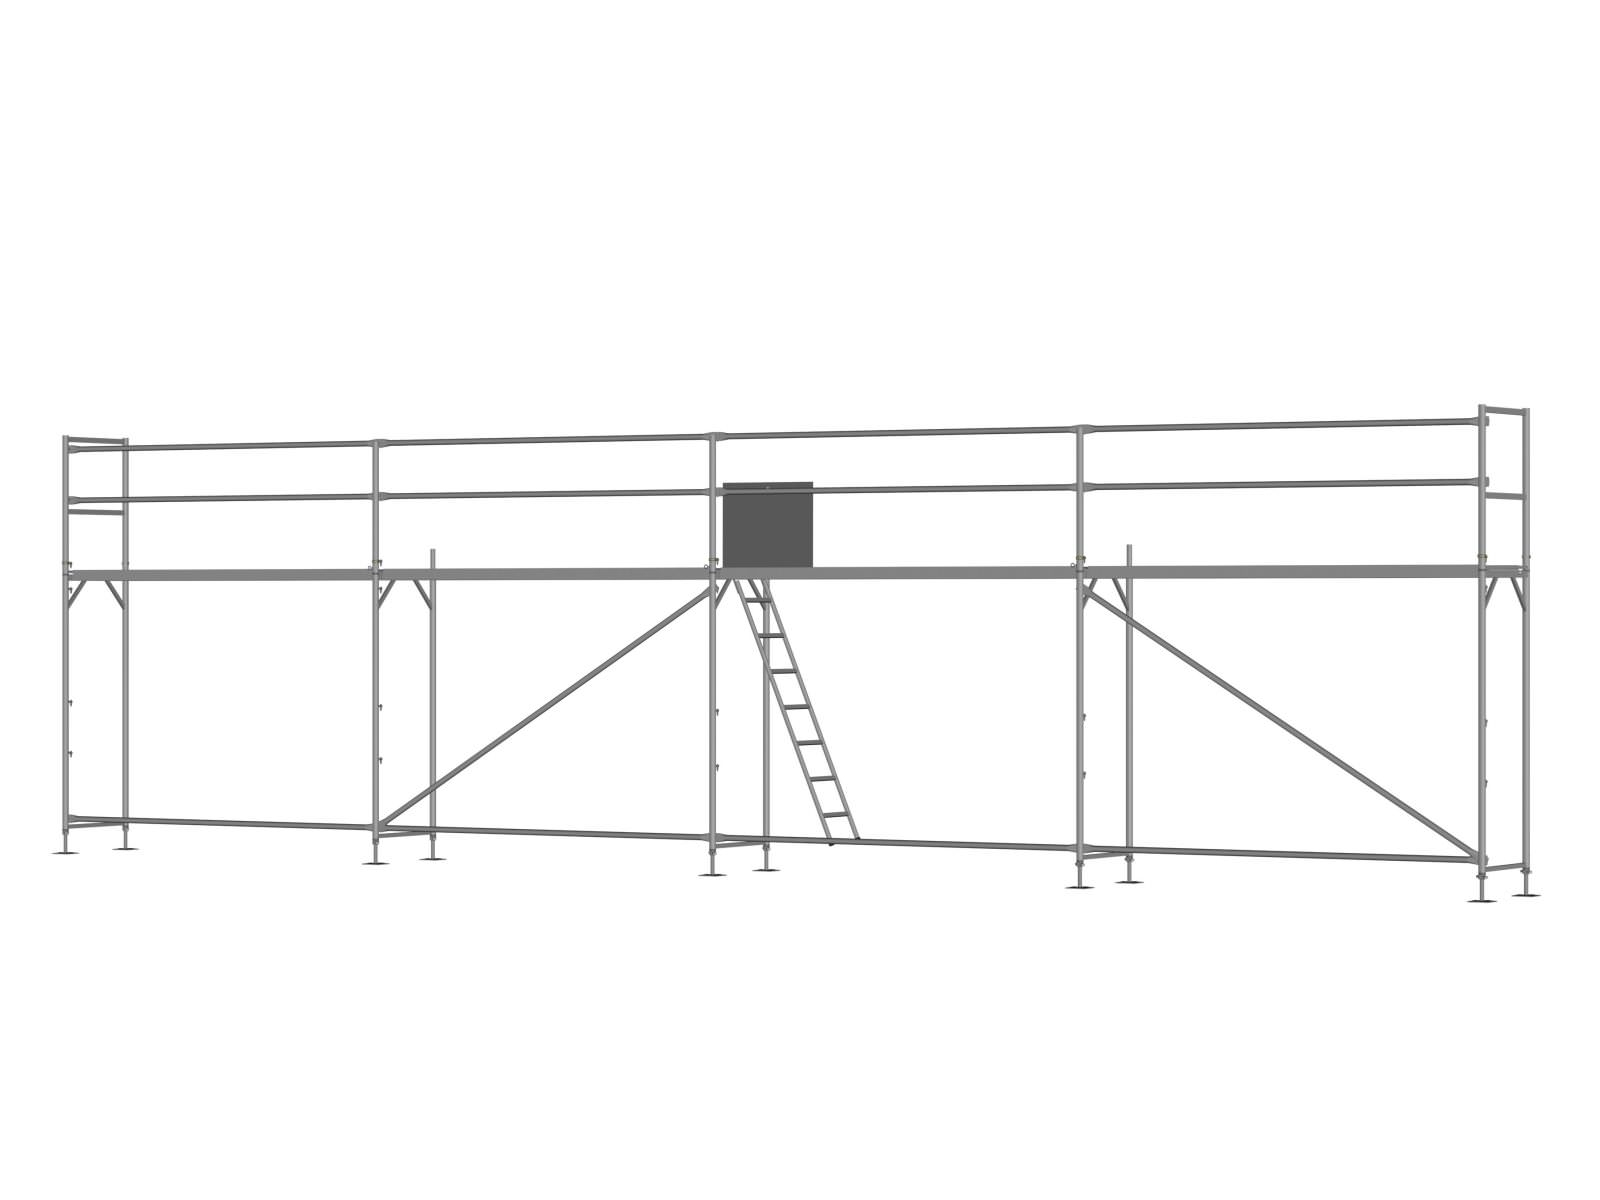 Stahl Traufseitengerüst 48 m², Feldlänge 3,0 m - Basis-Gerüst inkl. Aufstieg & Befestigung